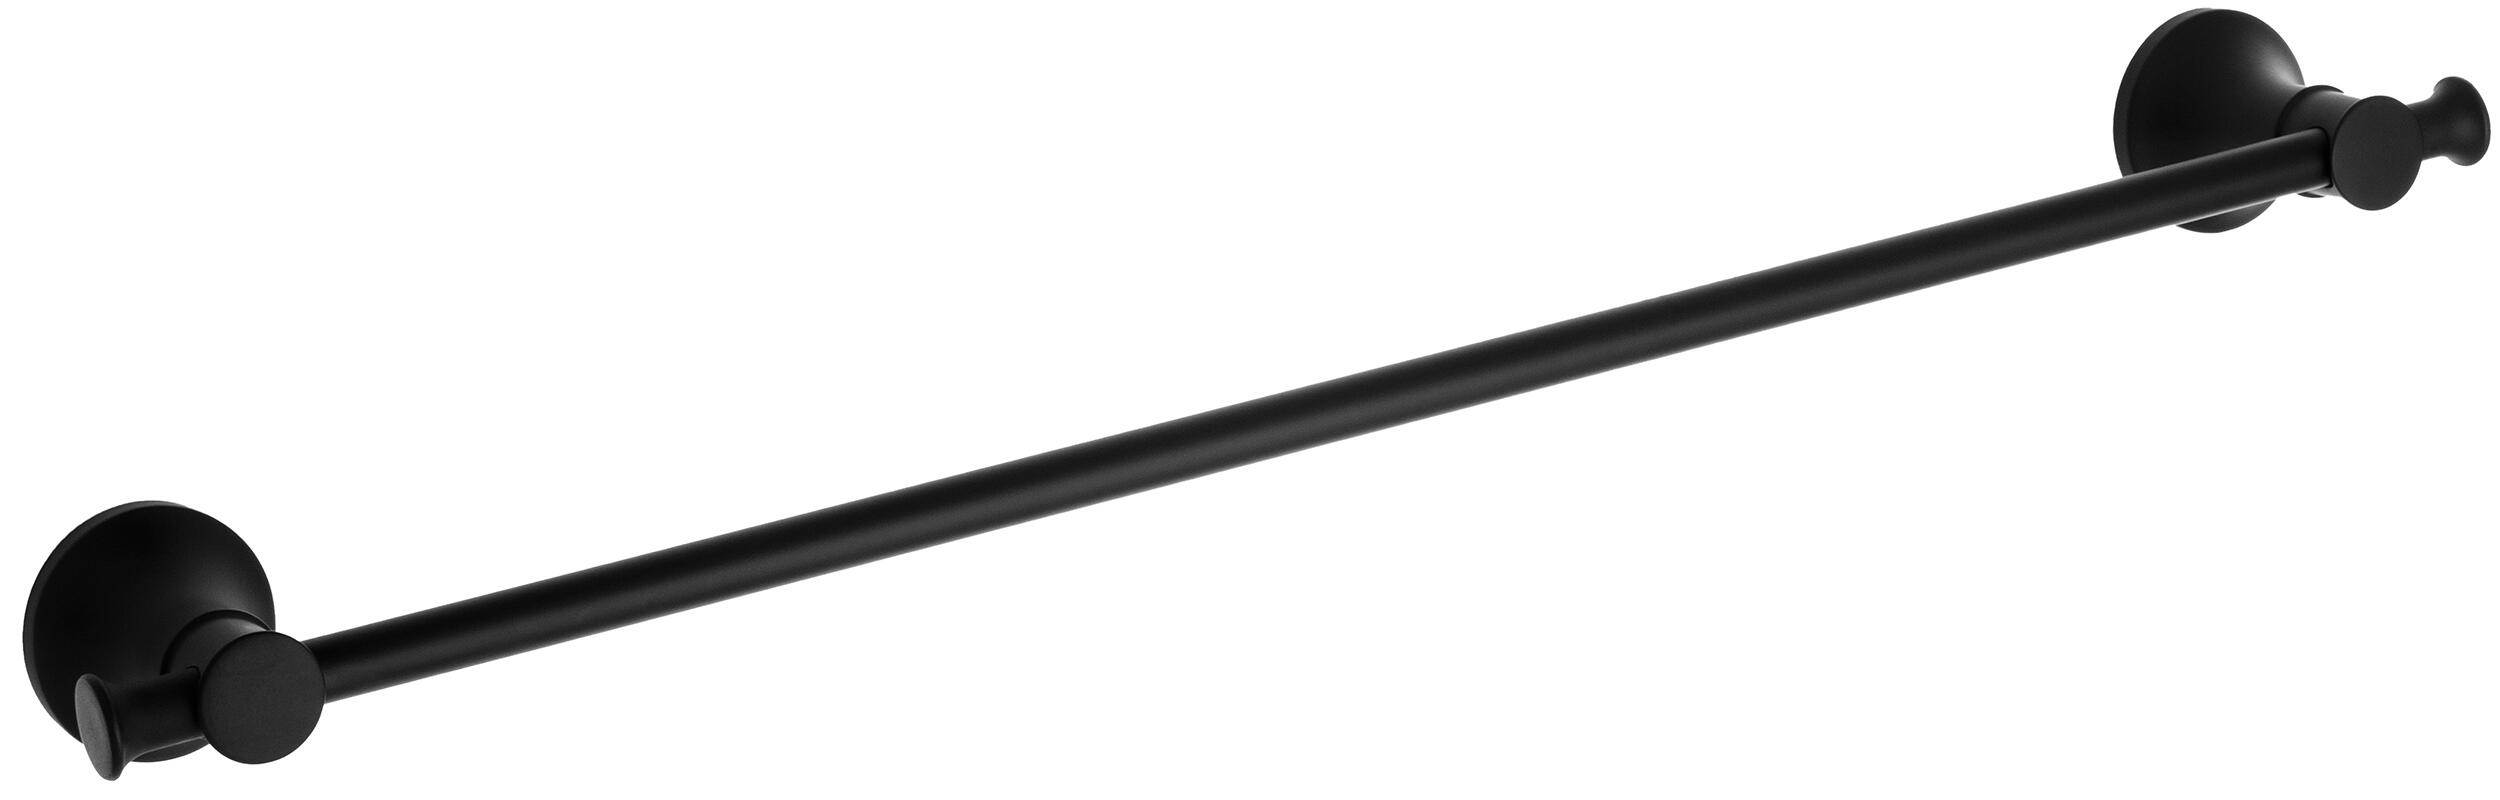 Toallero cardiff negro 60x5.5 cm